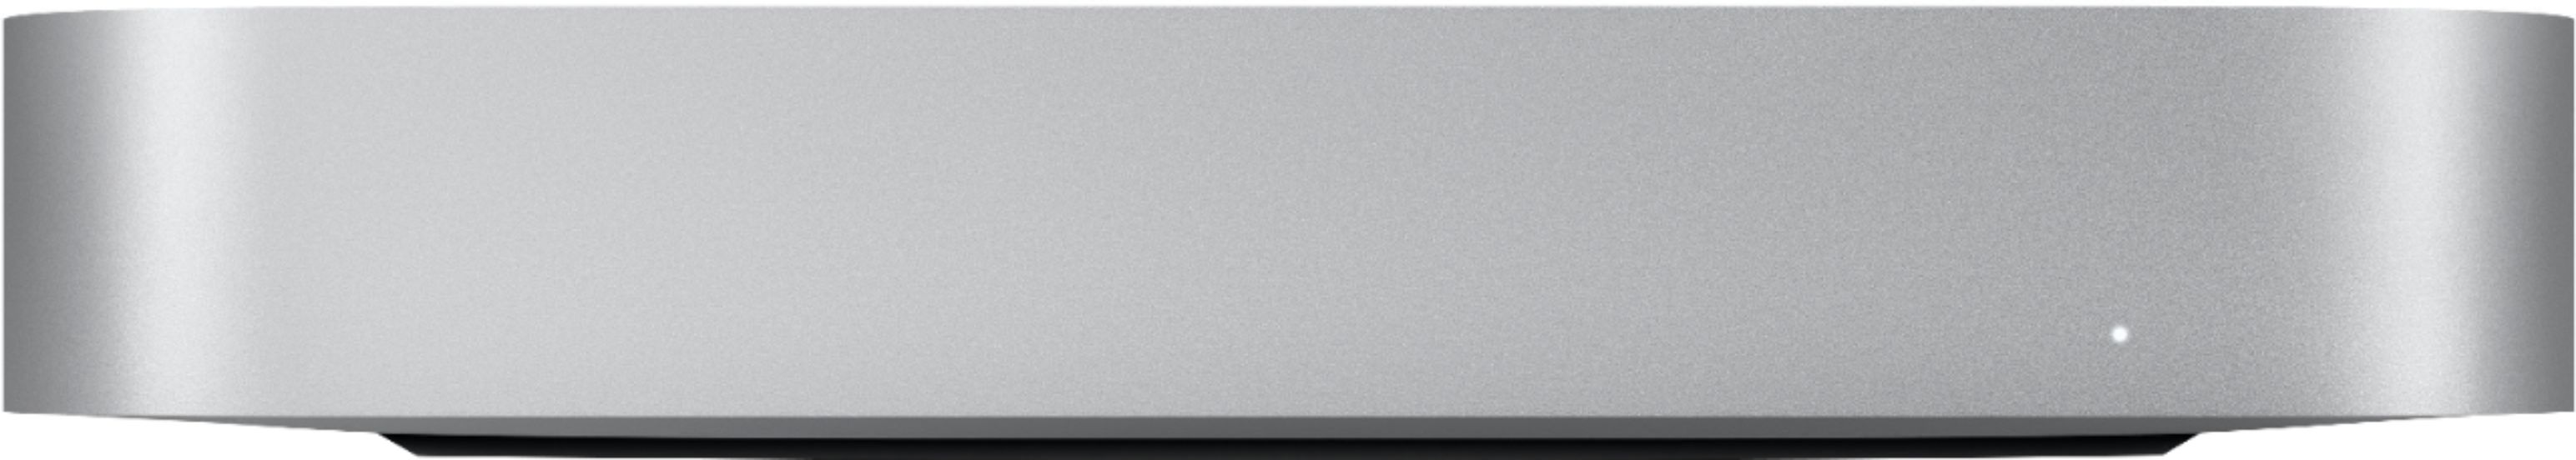 Mac mini Desktop Apple M1 chip 8GB Memory 512GB SSD Silver MGNT3LL 